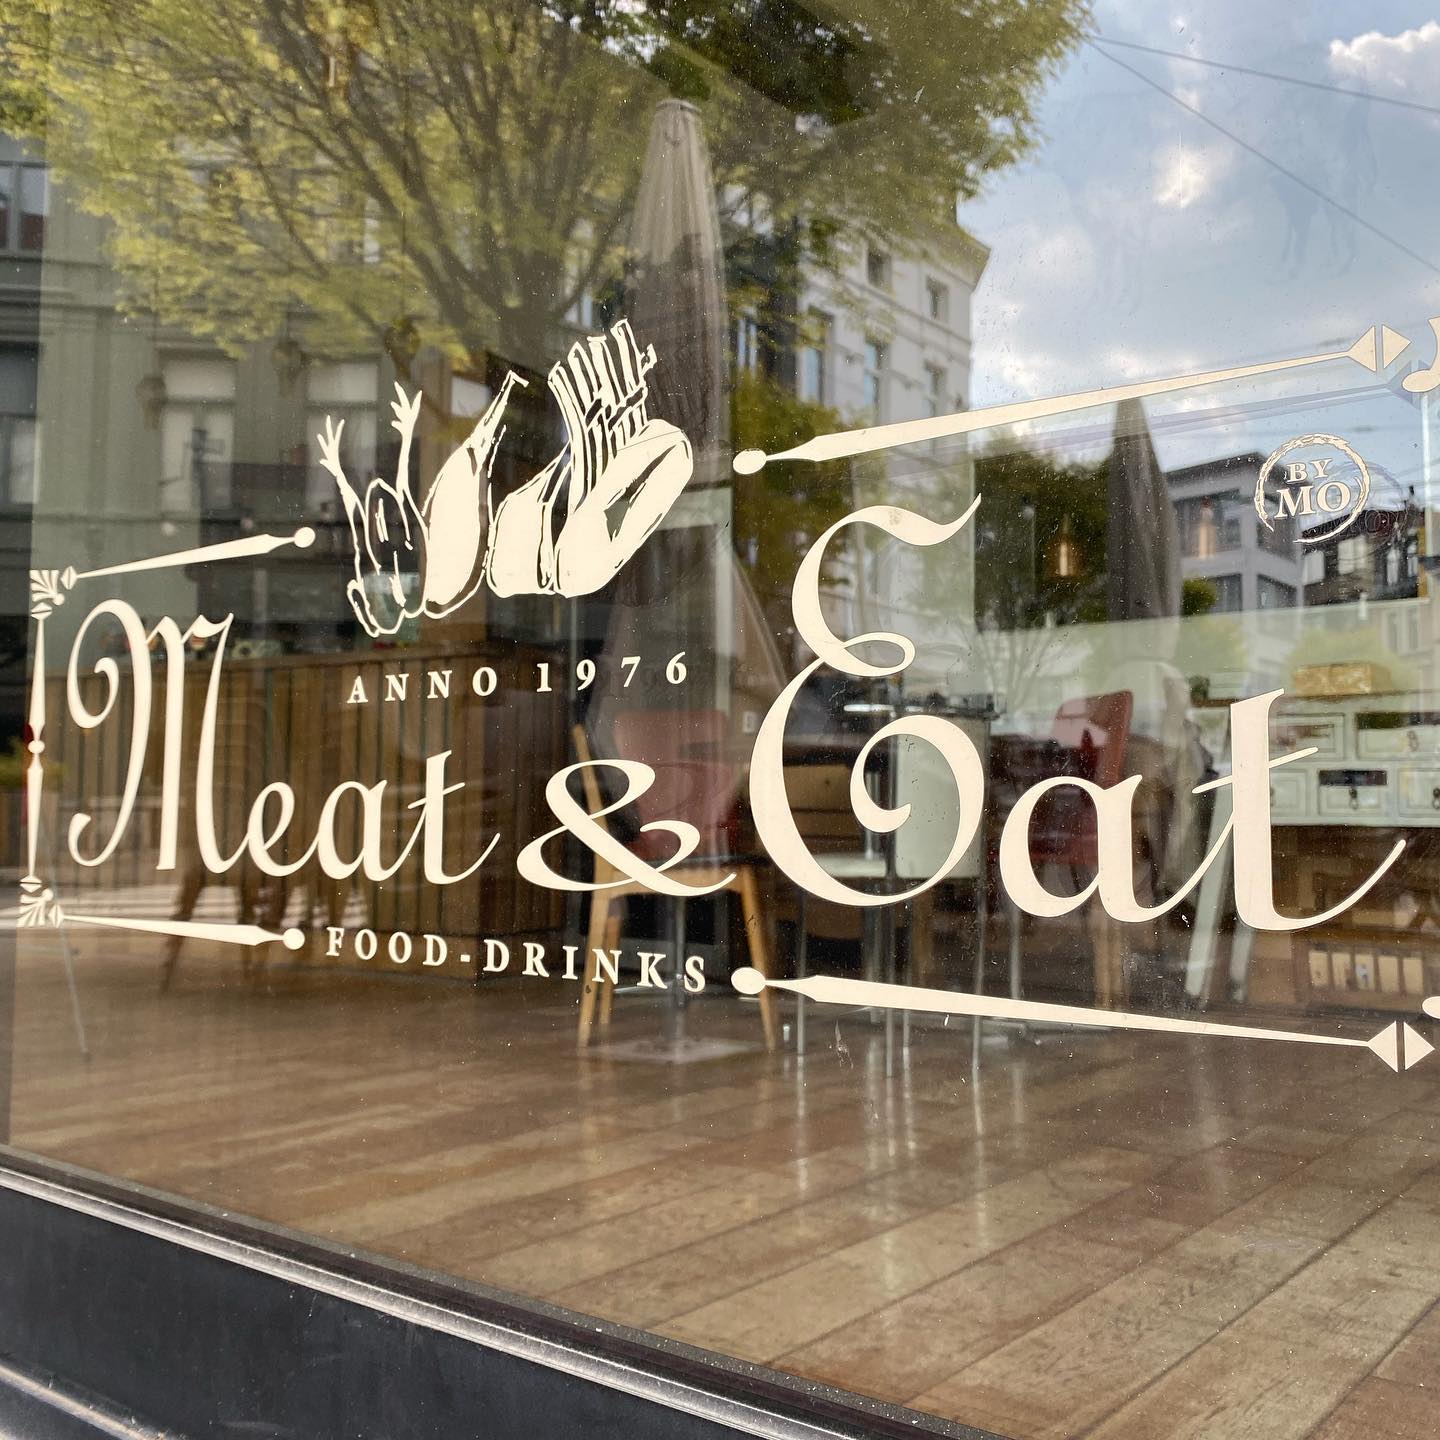 vleesrestaurant antwerpen de beste steak van belgie steakhouse meat and eat